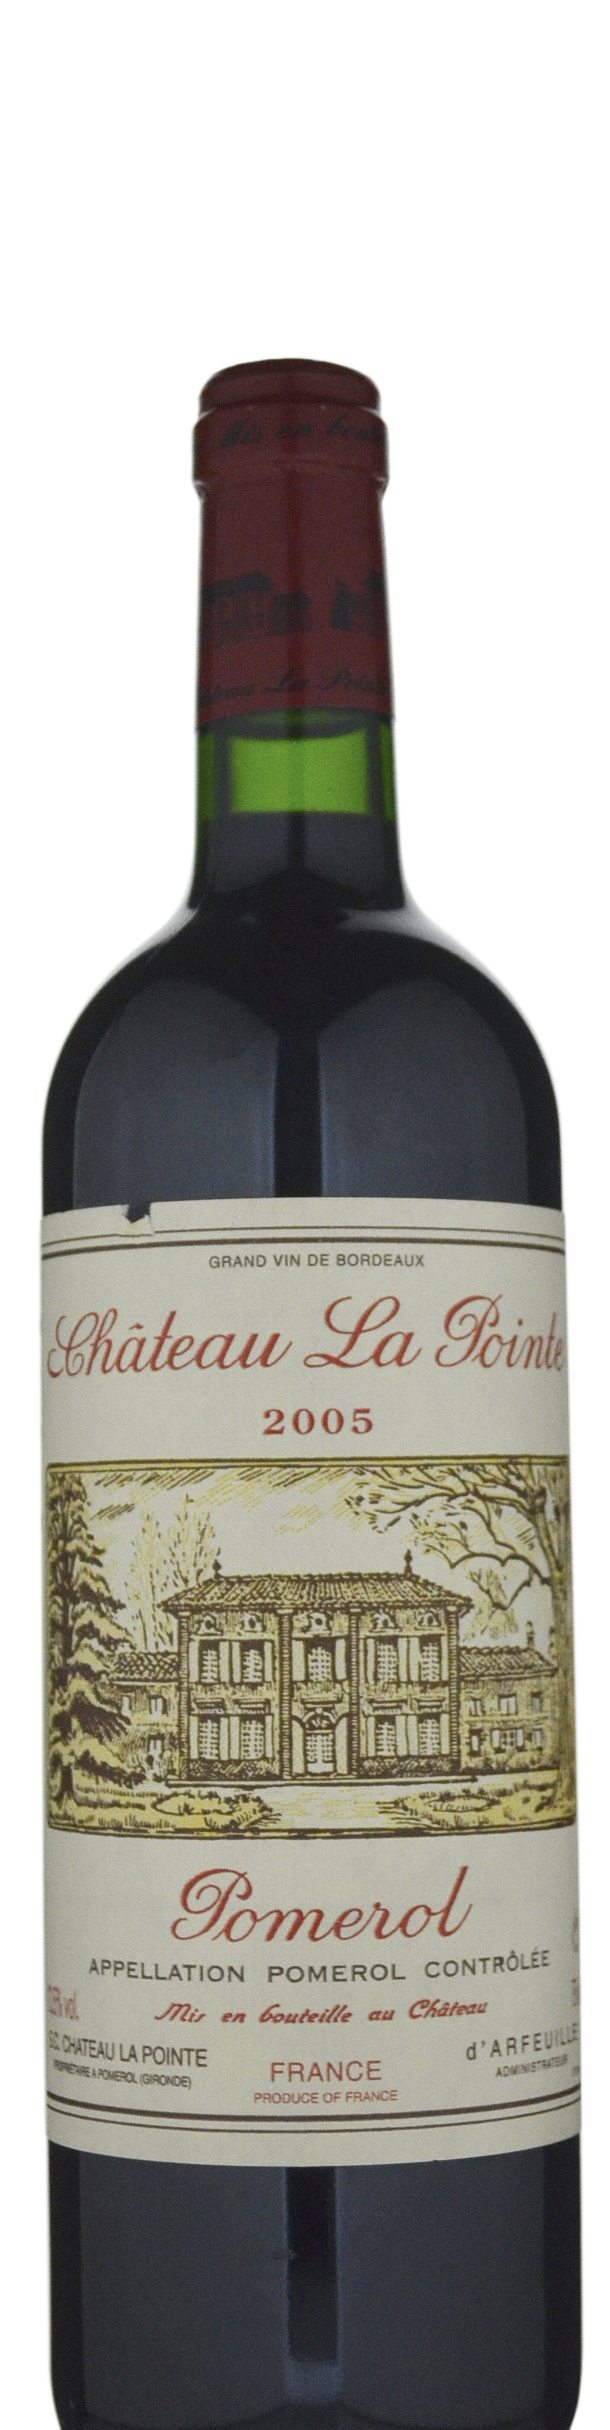 Chateau La Pointe Pomerol Bordeaux 2005 – Vintage Wine - Premium